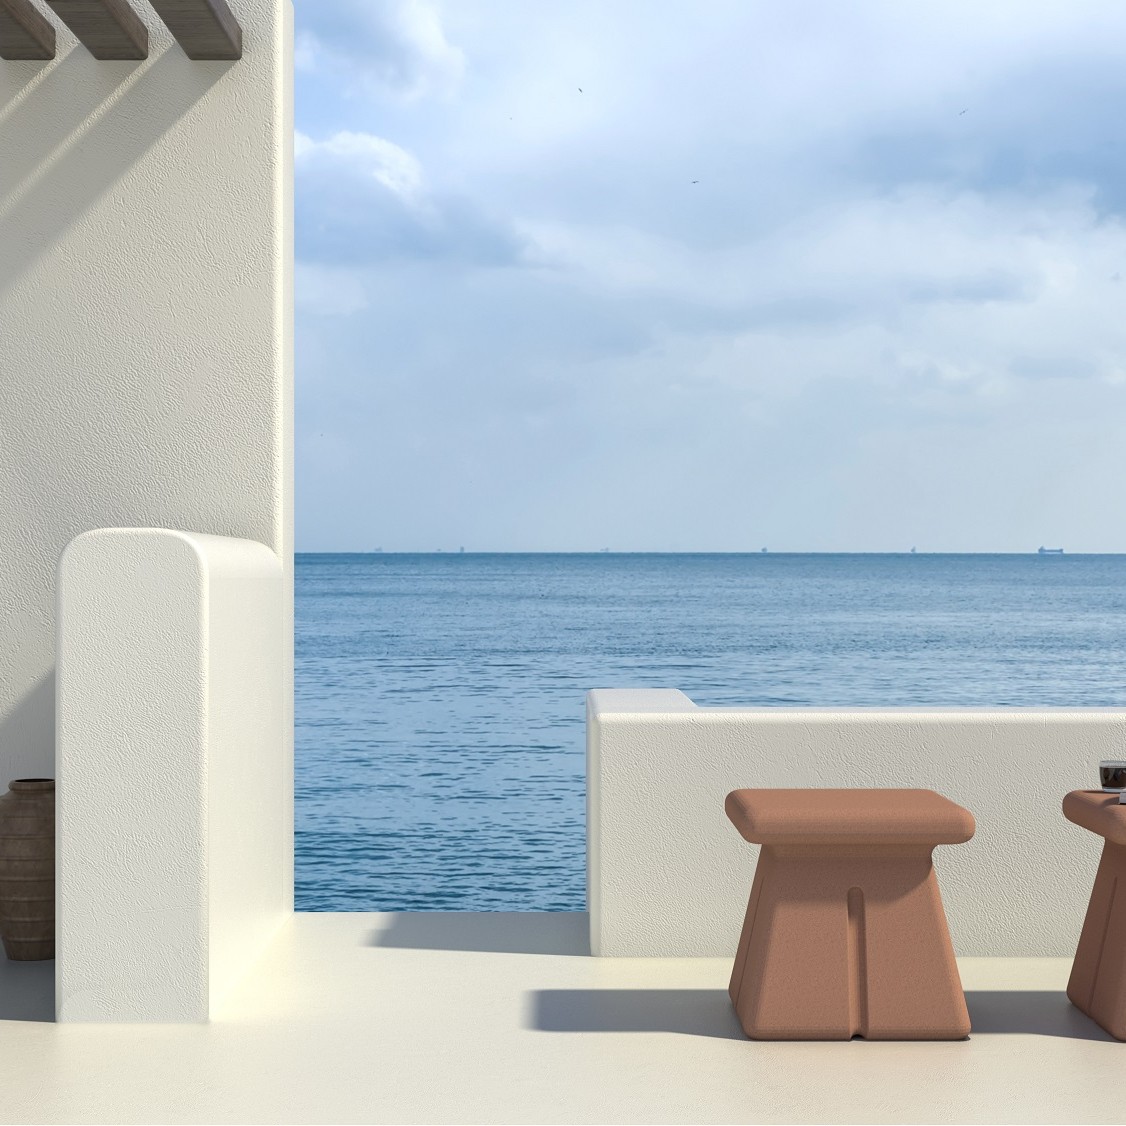 Cube concrete stool by sotiris lazou design studio lowres